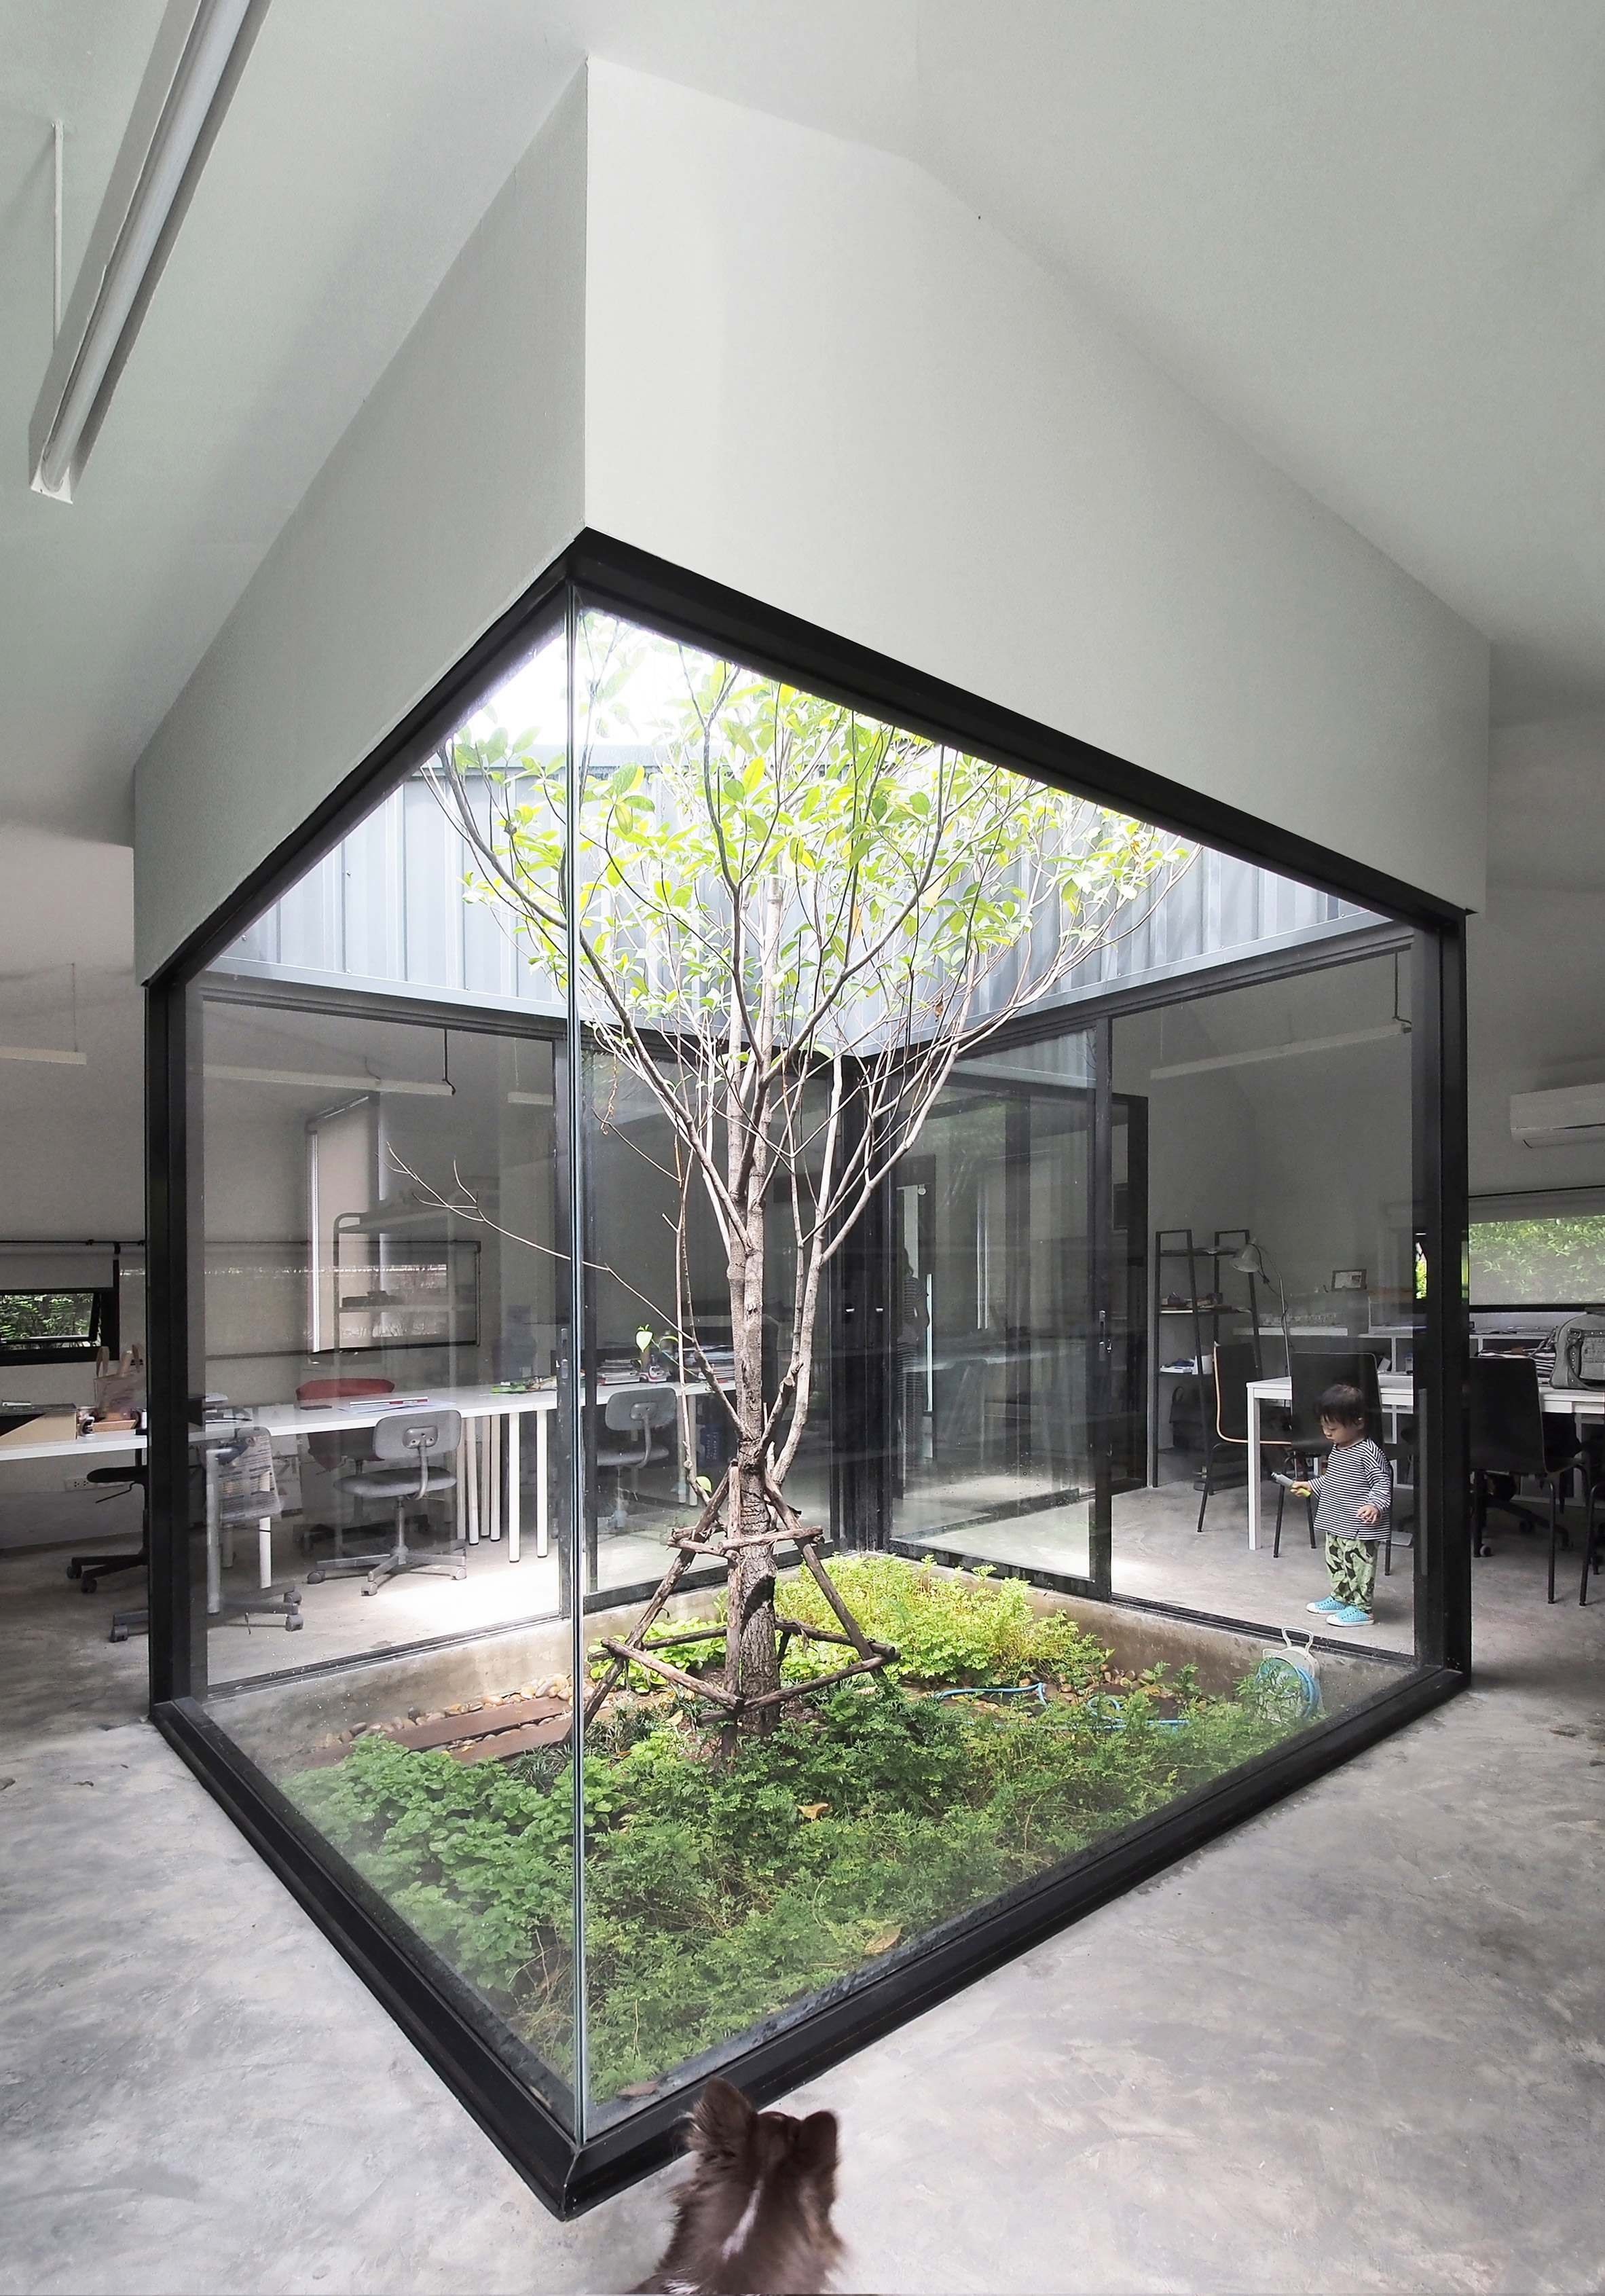 Jardim envolto em paredes de vidro, deixando entrar a luz natural e junto com ela a vegetação.